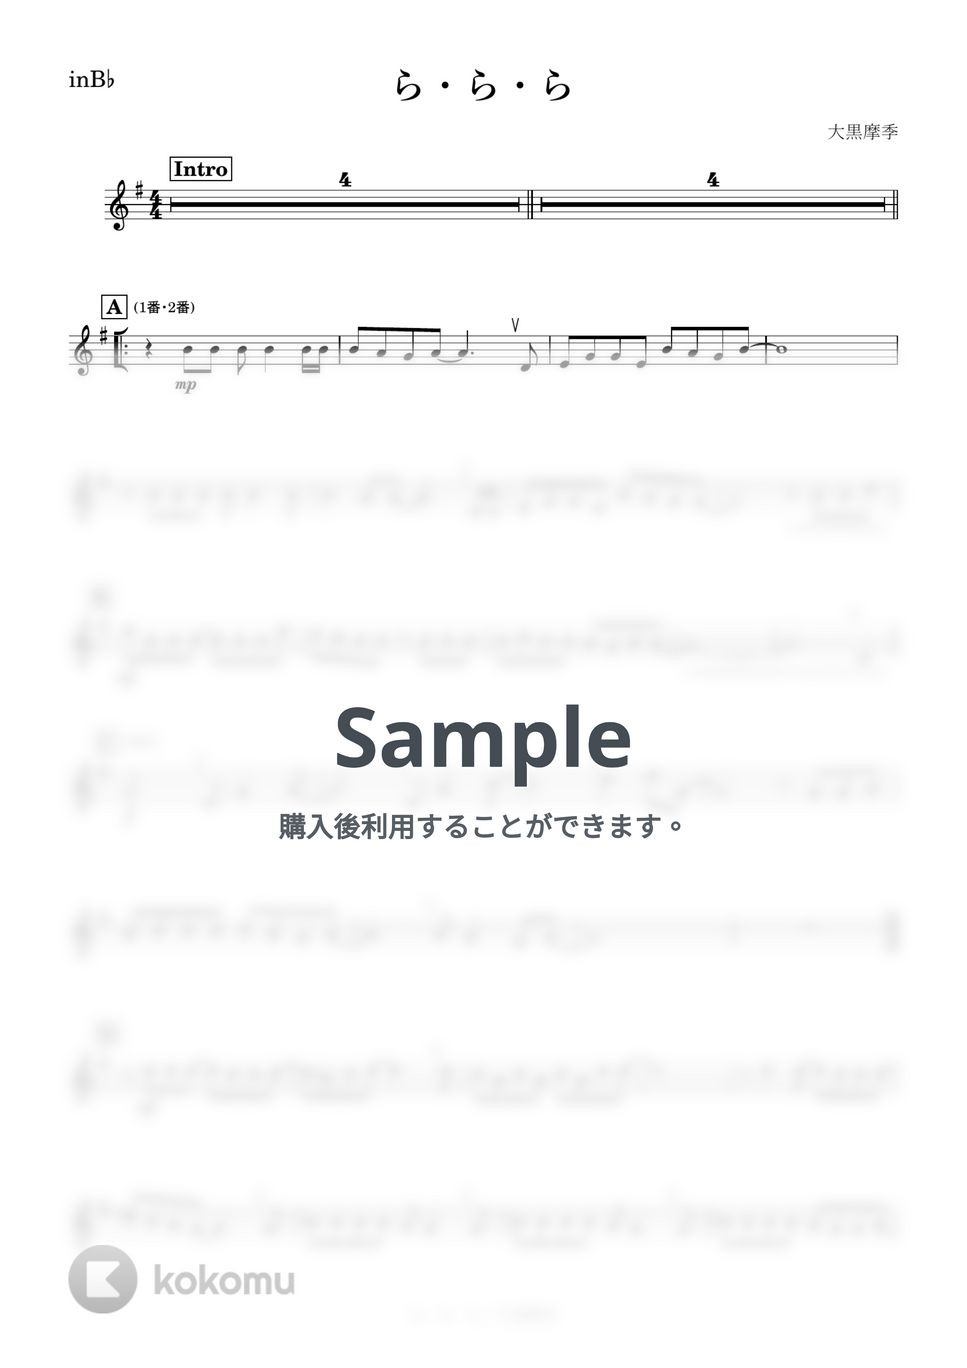 大黒摩季 - ら・ら・ら (B♭) by kanamusic